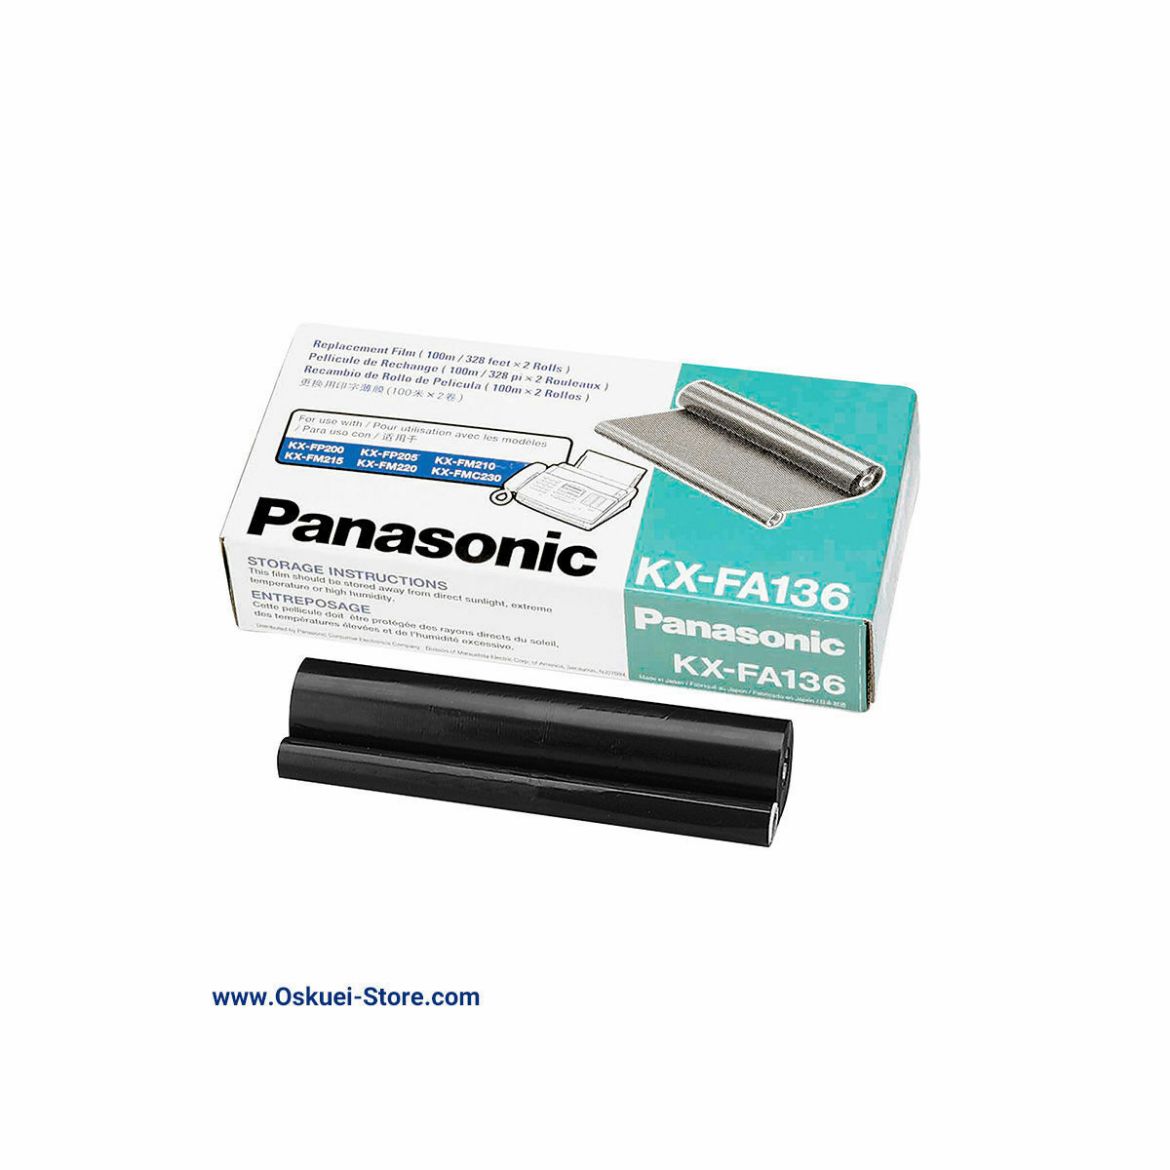 Panasonic KX-FA136 Film Roll For Panasonic Fax Machines